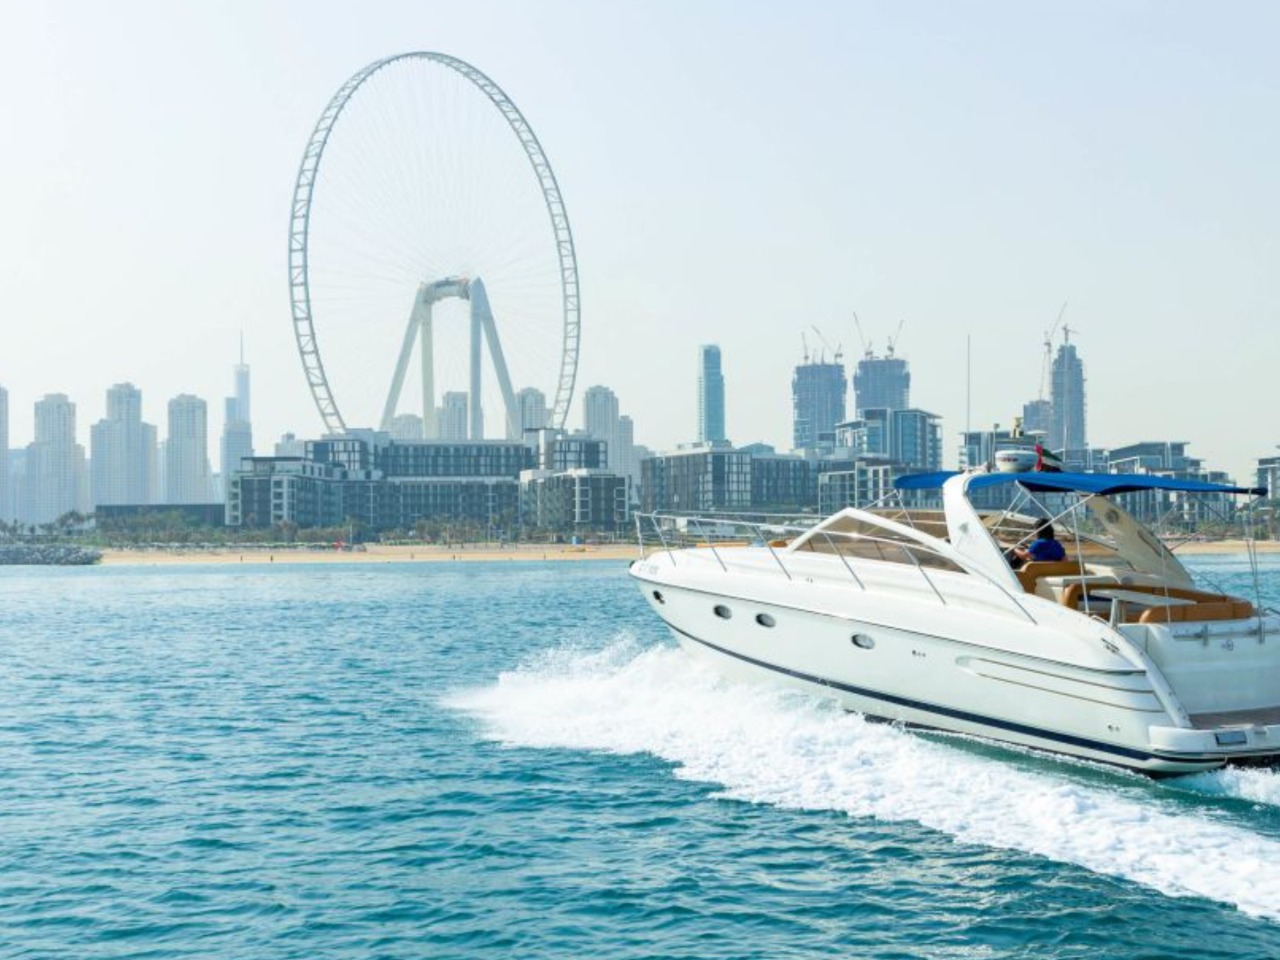 Вояж на роскошной яхте из Дубай-Марины | Цена 440$, отзывы, описание экскурсии